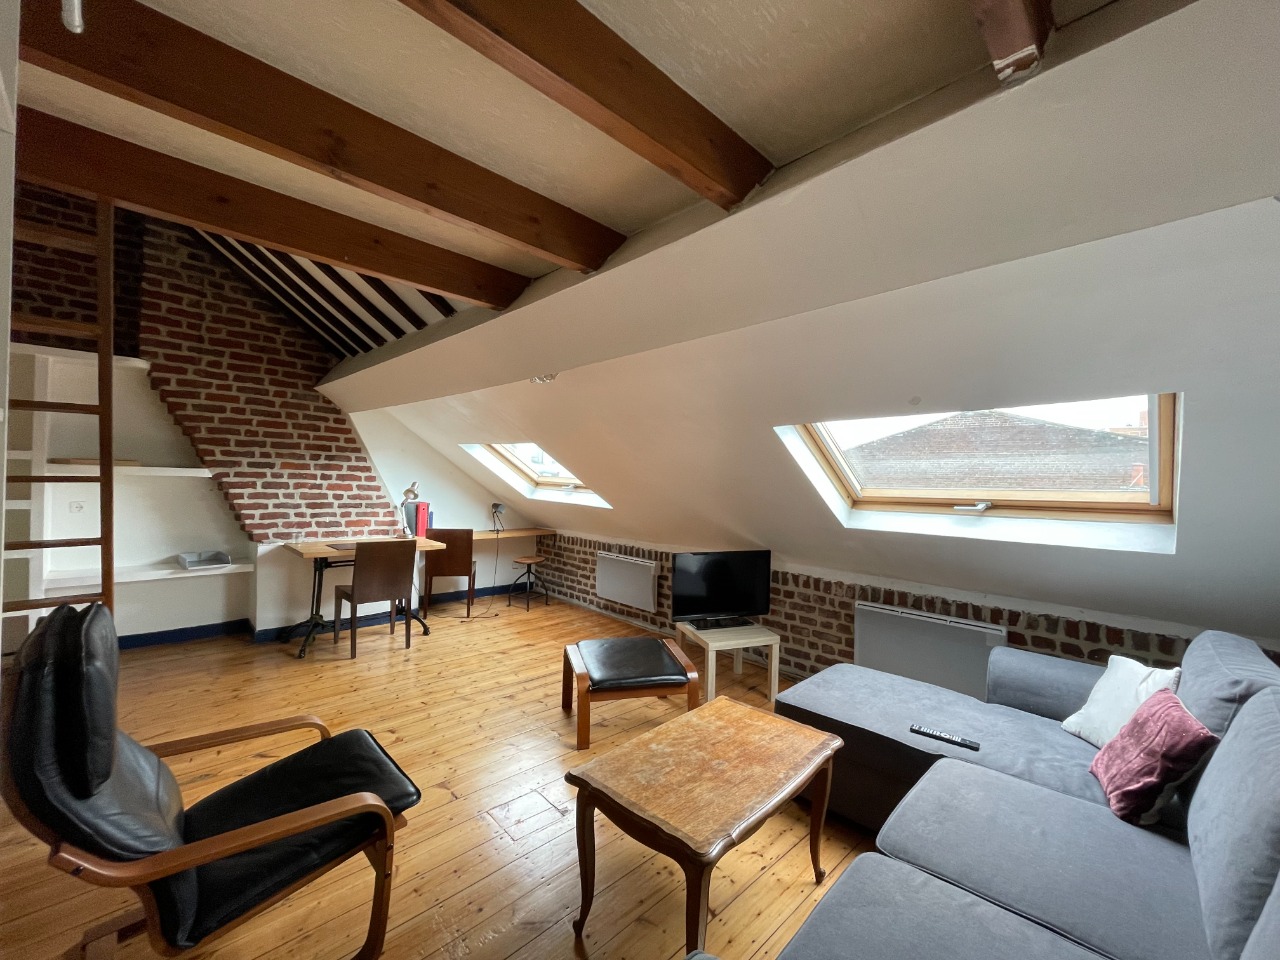 Vente appartement 59000 Lille - Grand studio - rue Philippe de Comines